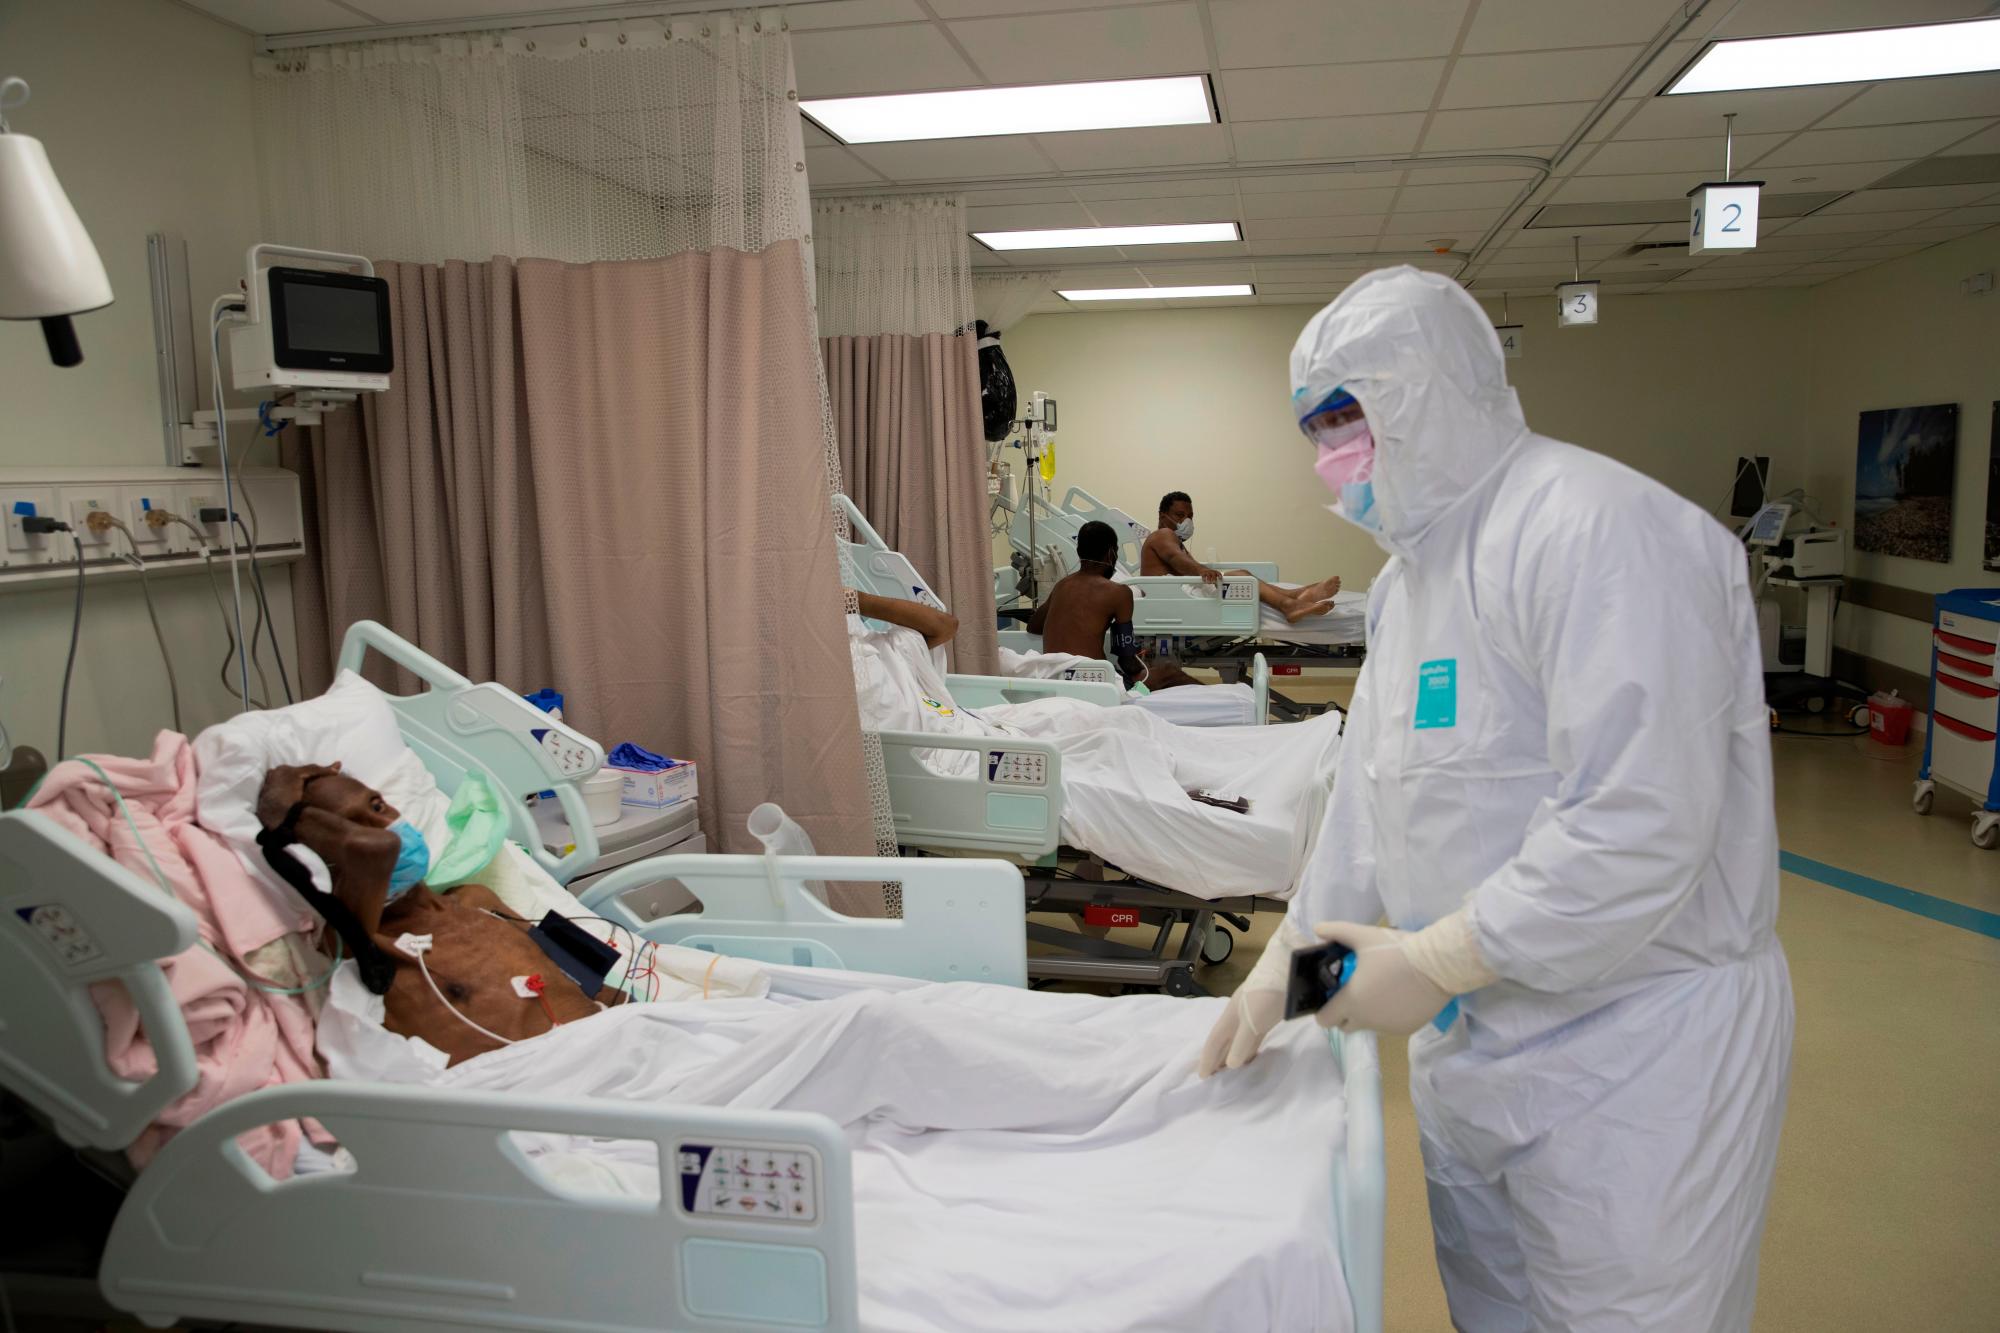 El doctor Darvy Taveras, emergenciólogo e intensivista, habla con un paciente en el área de Cuidados Intensivos de la Unidad COVID-19 del Centro de Oftalmología y Trasplante Cardio-Neuro (Cecanot) en Santo Domingo, República Dominicana, 15 de mayo de 2020. Durante todo el día, 63 médicos, 120 enfermeras y 35 empleados de servicios generales atienden a unos 40 pacientes en el centro de salud. EFE / Orlando Barria